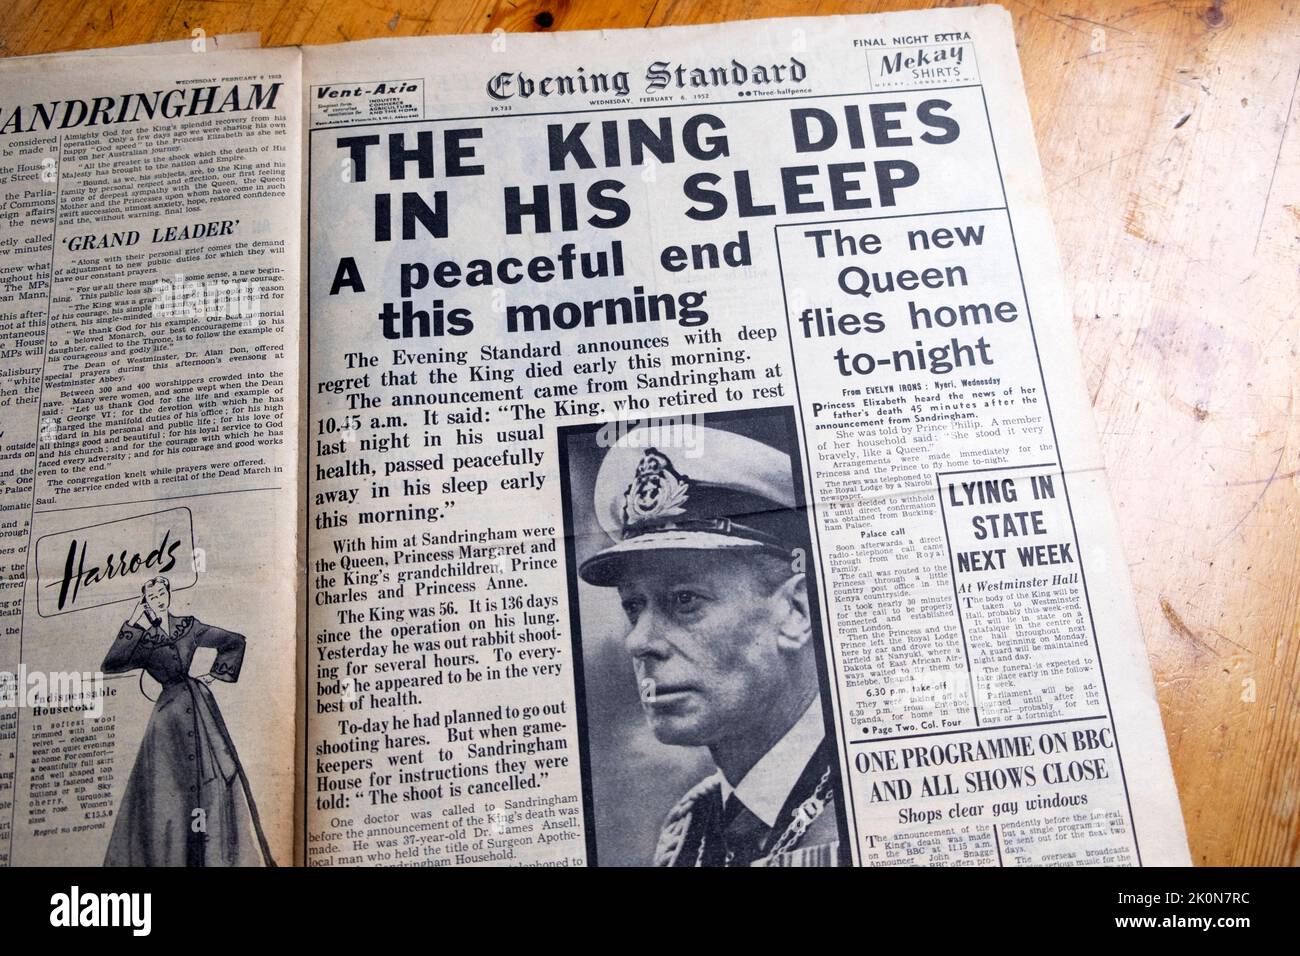 King GEORGE VI PORTADA NOCHE Titular del periódico estándar 'El Rey Muere en Su Sueño' y 'La nueva Reina vuela a casa' Febrero 6 1952 Londres Inglaterra Reino Unido Foto de stock